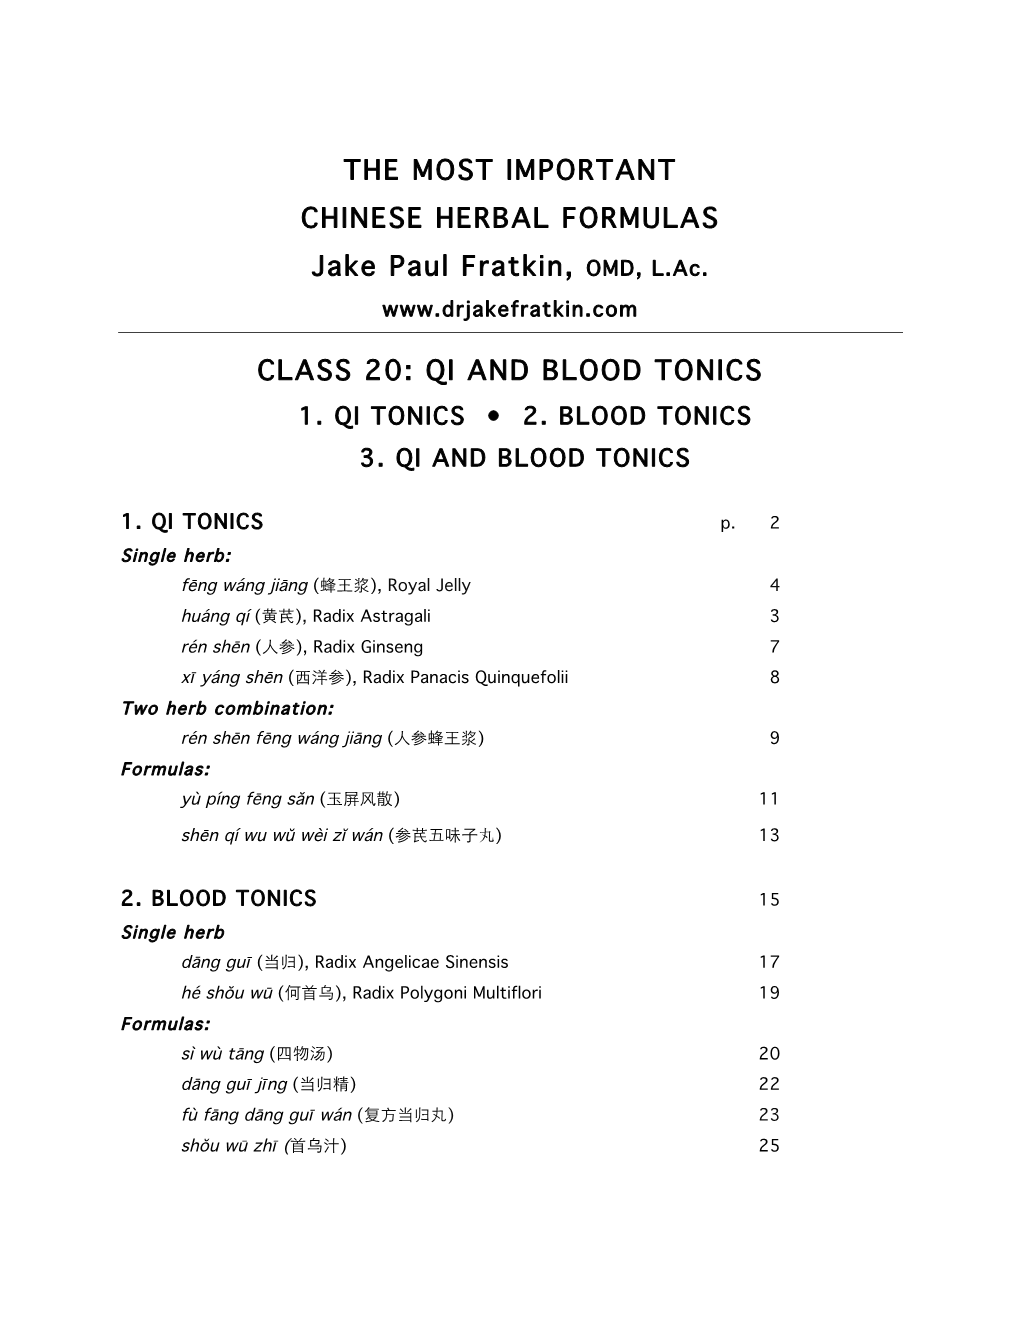 Class 20: Qi and Blood Tonics 1